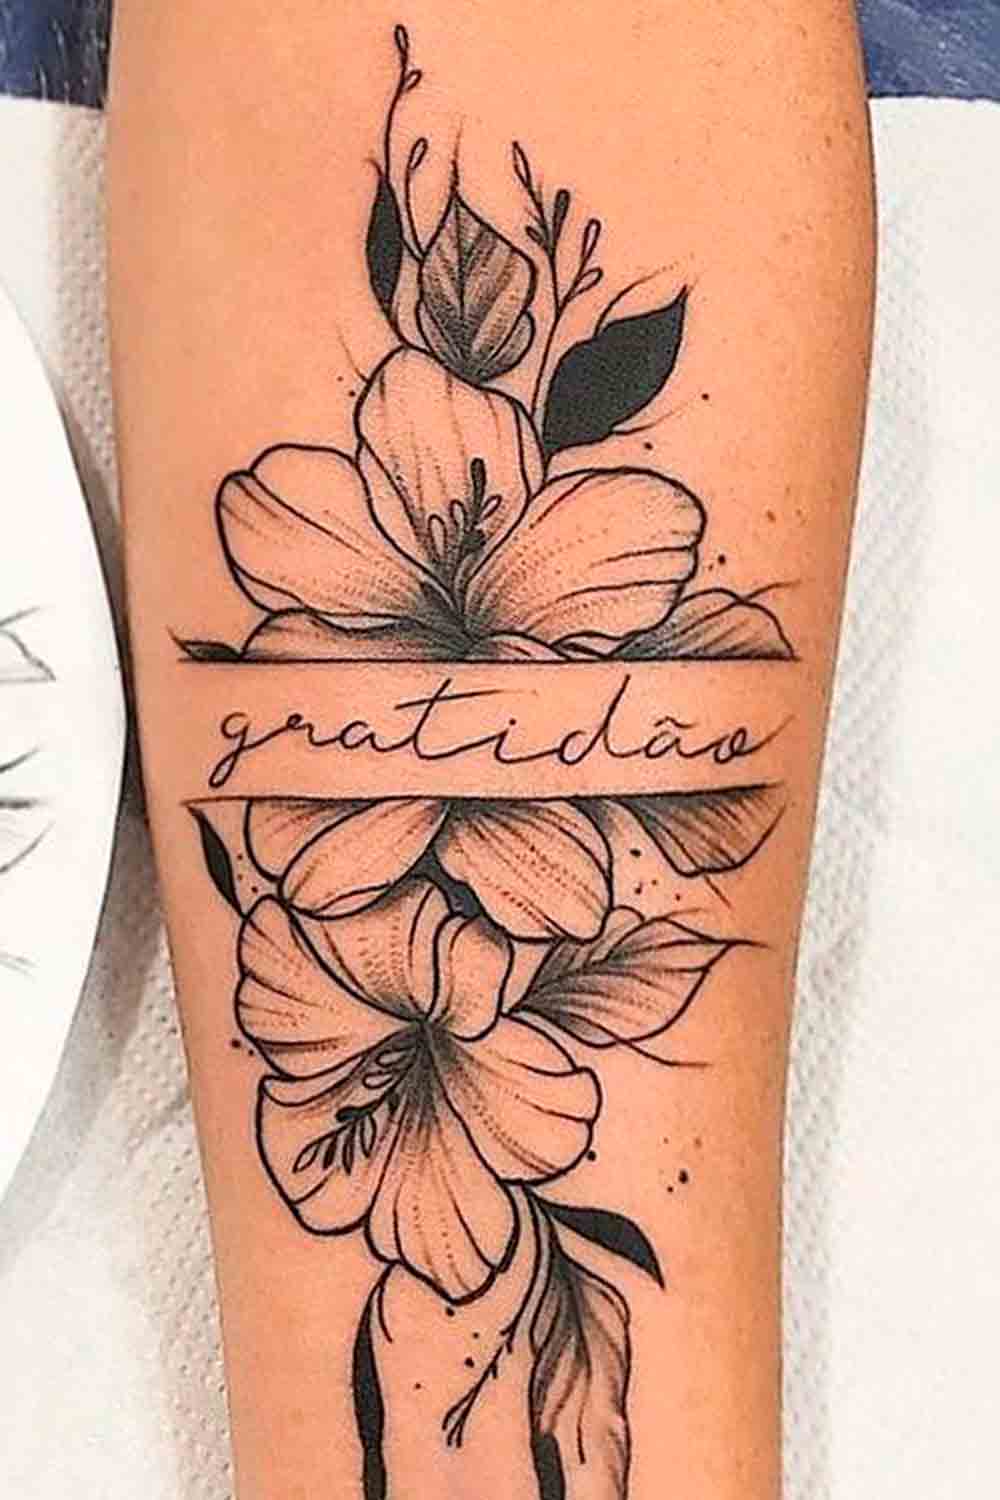 tatuagem-escrito-gratidao 